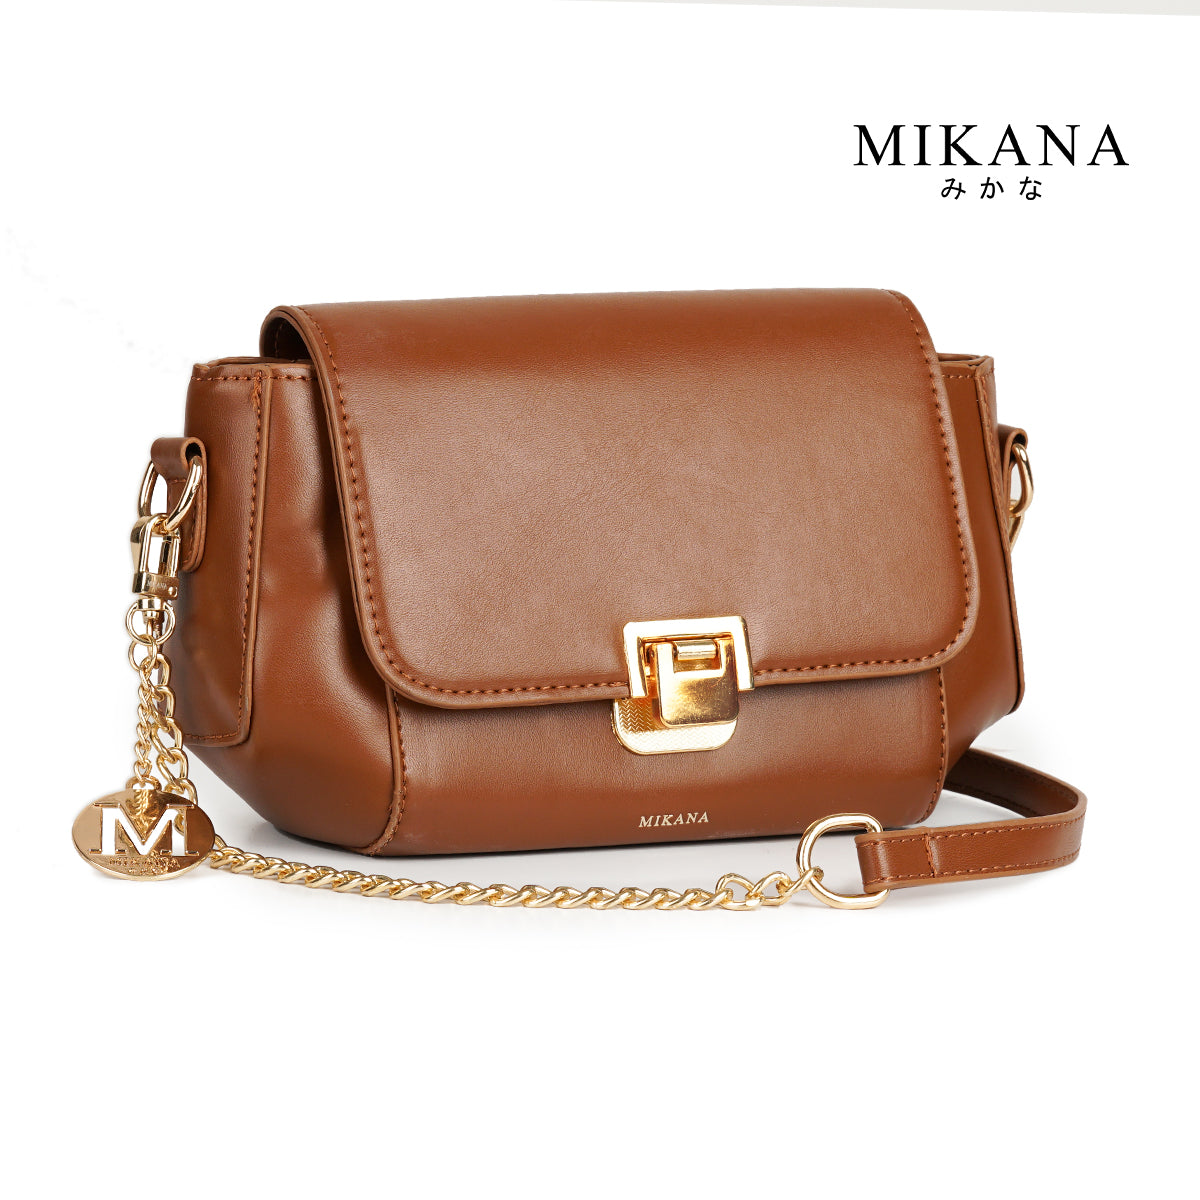 Mikana Esumi Chain Sling Bag for Woman